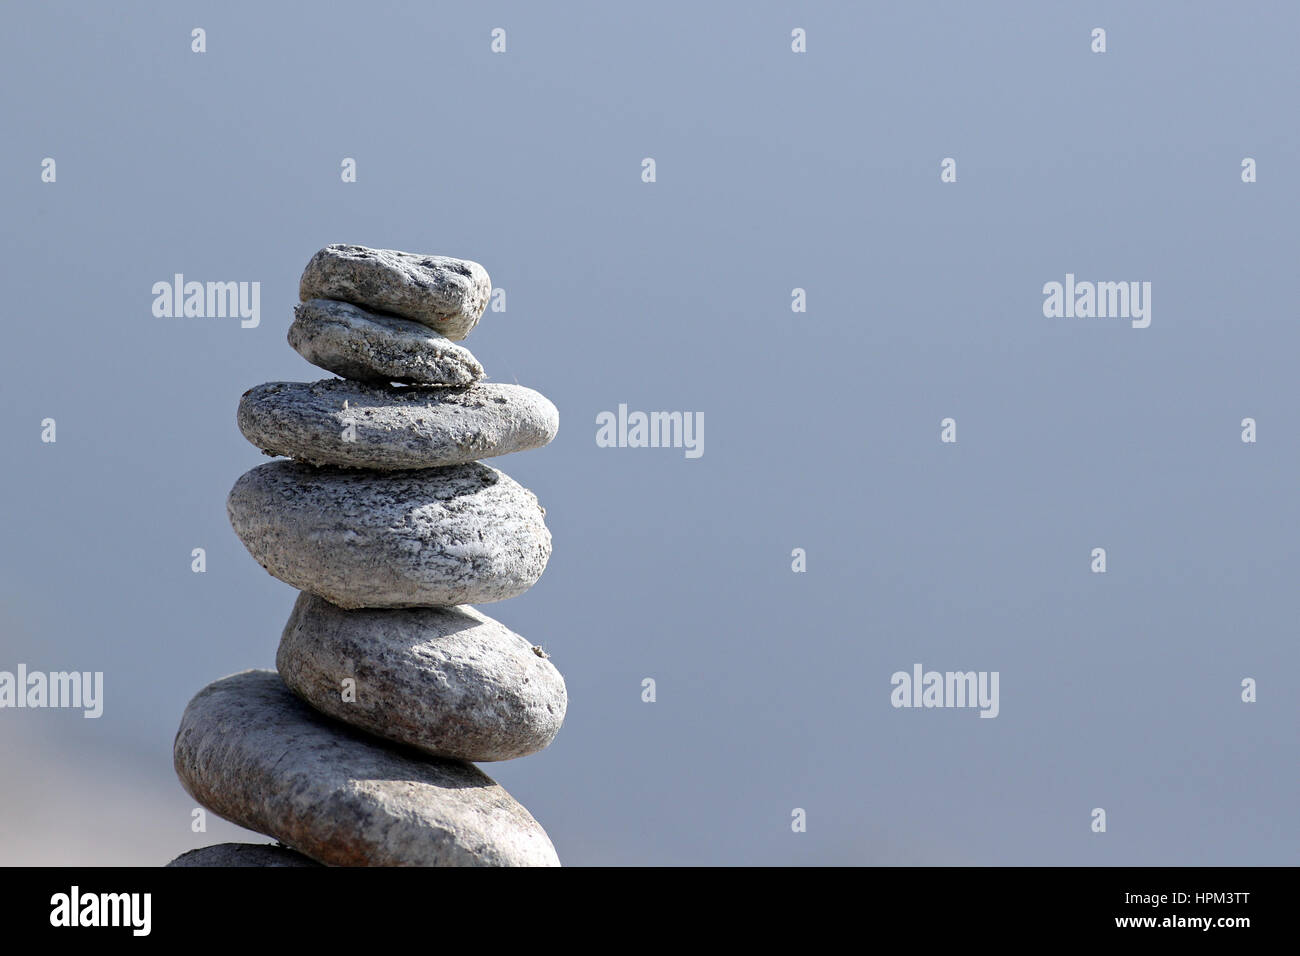 Columna de mano piedras zen de granito apilados contra el fondo azul del agua Foto de stock